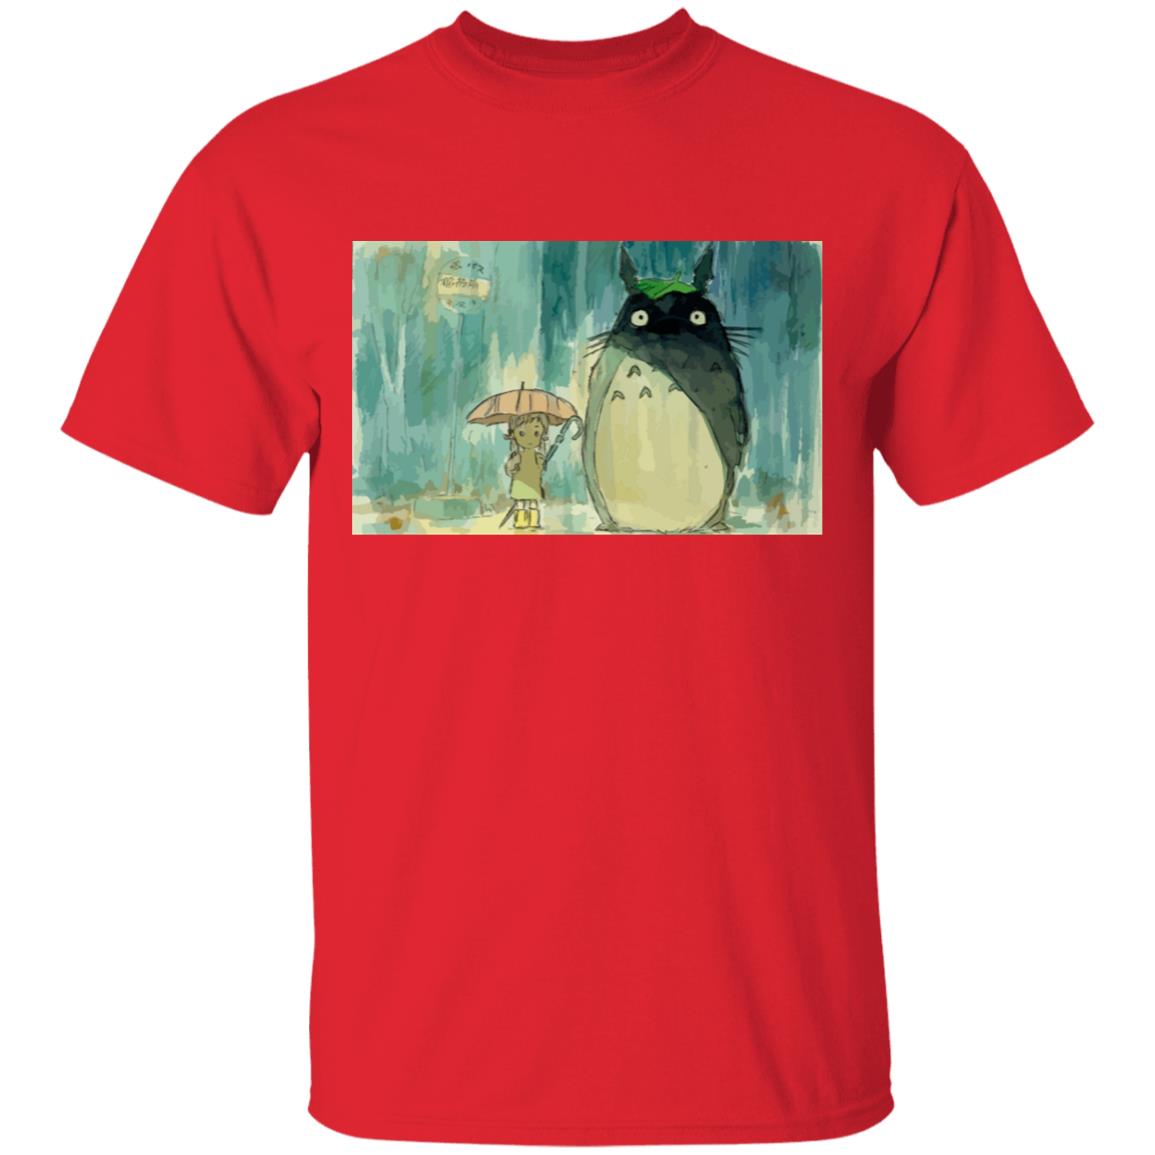 My Neighbor Totoro Original Poster T Shirt Unisex Ghibli Store ghibli.store